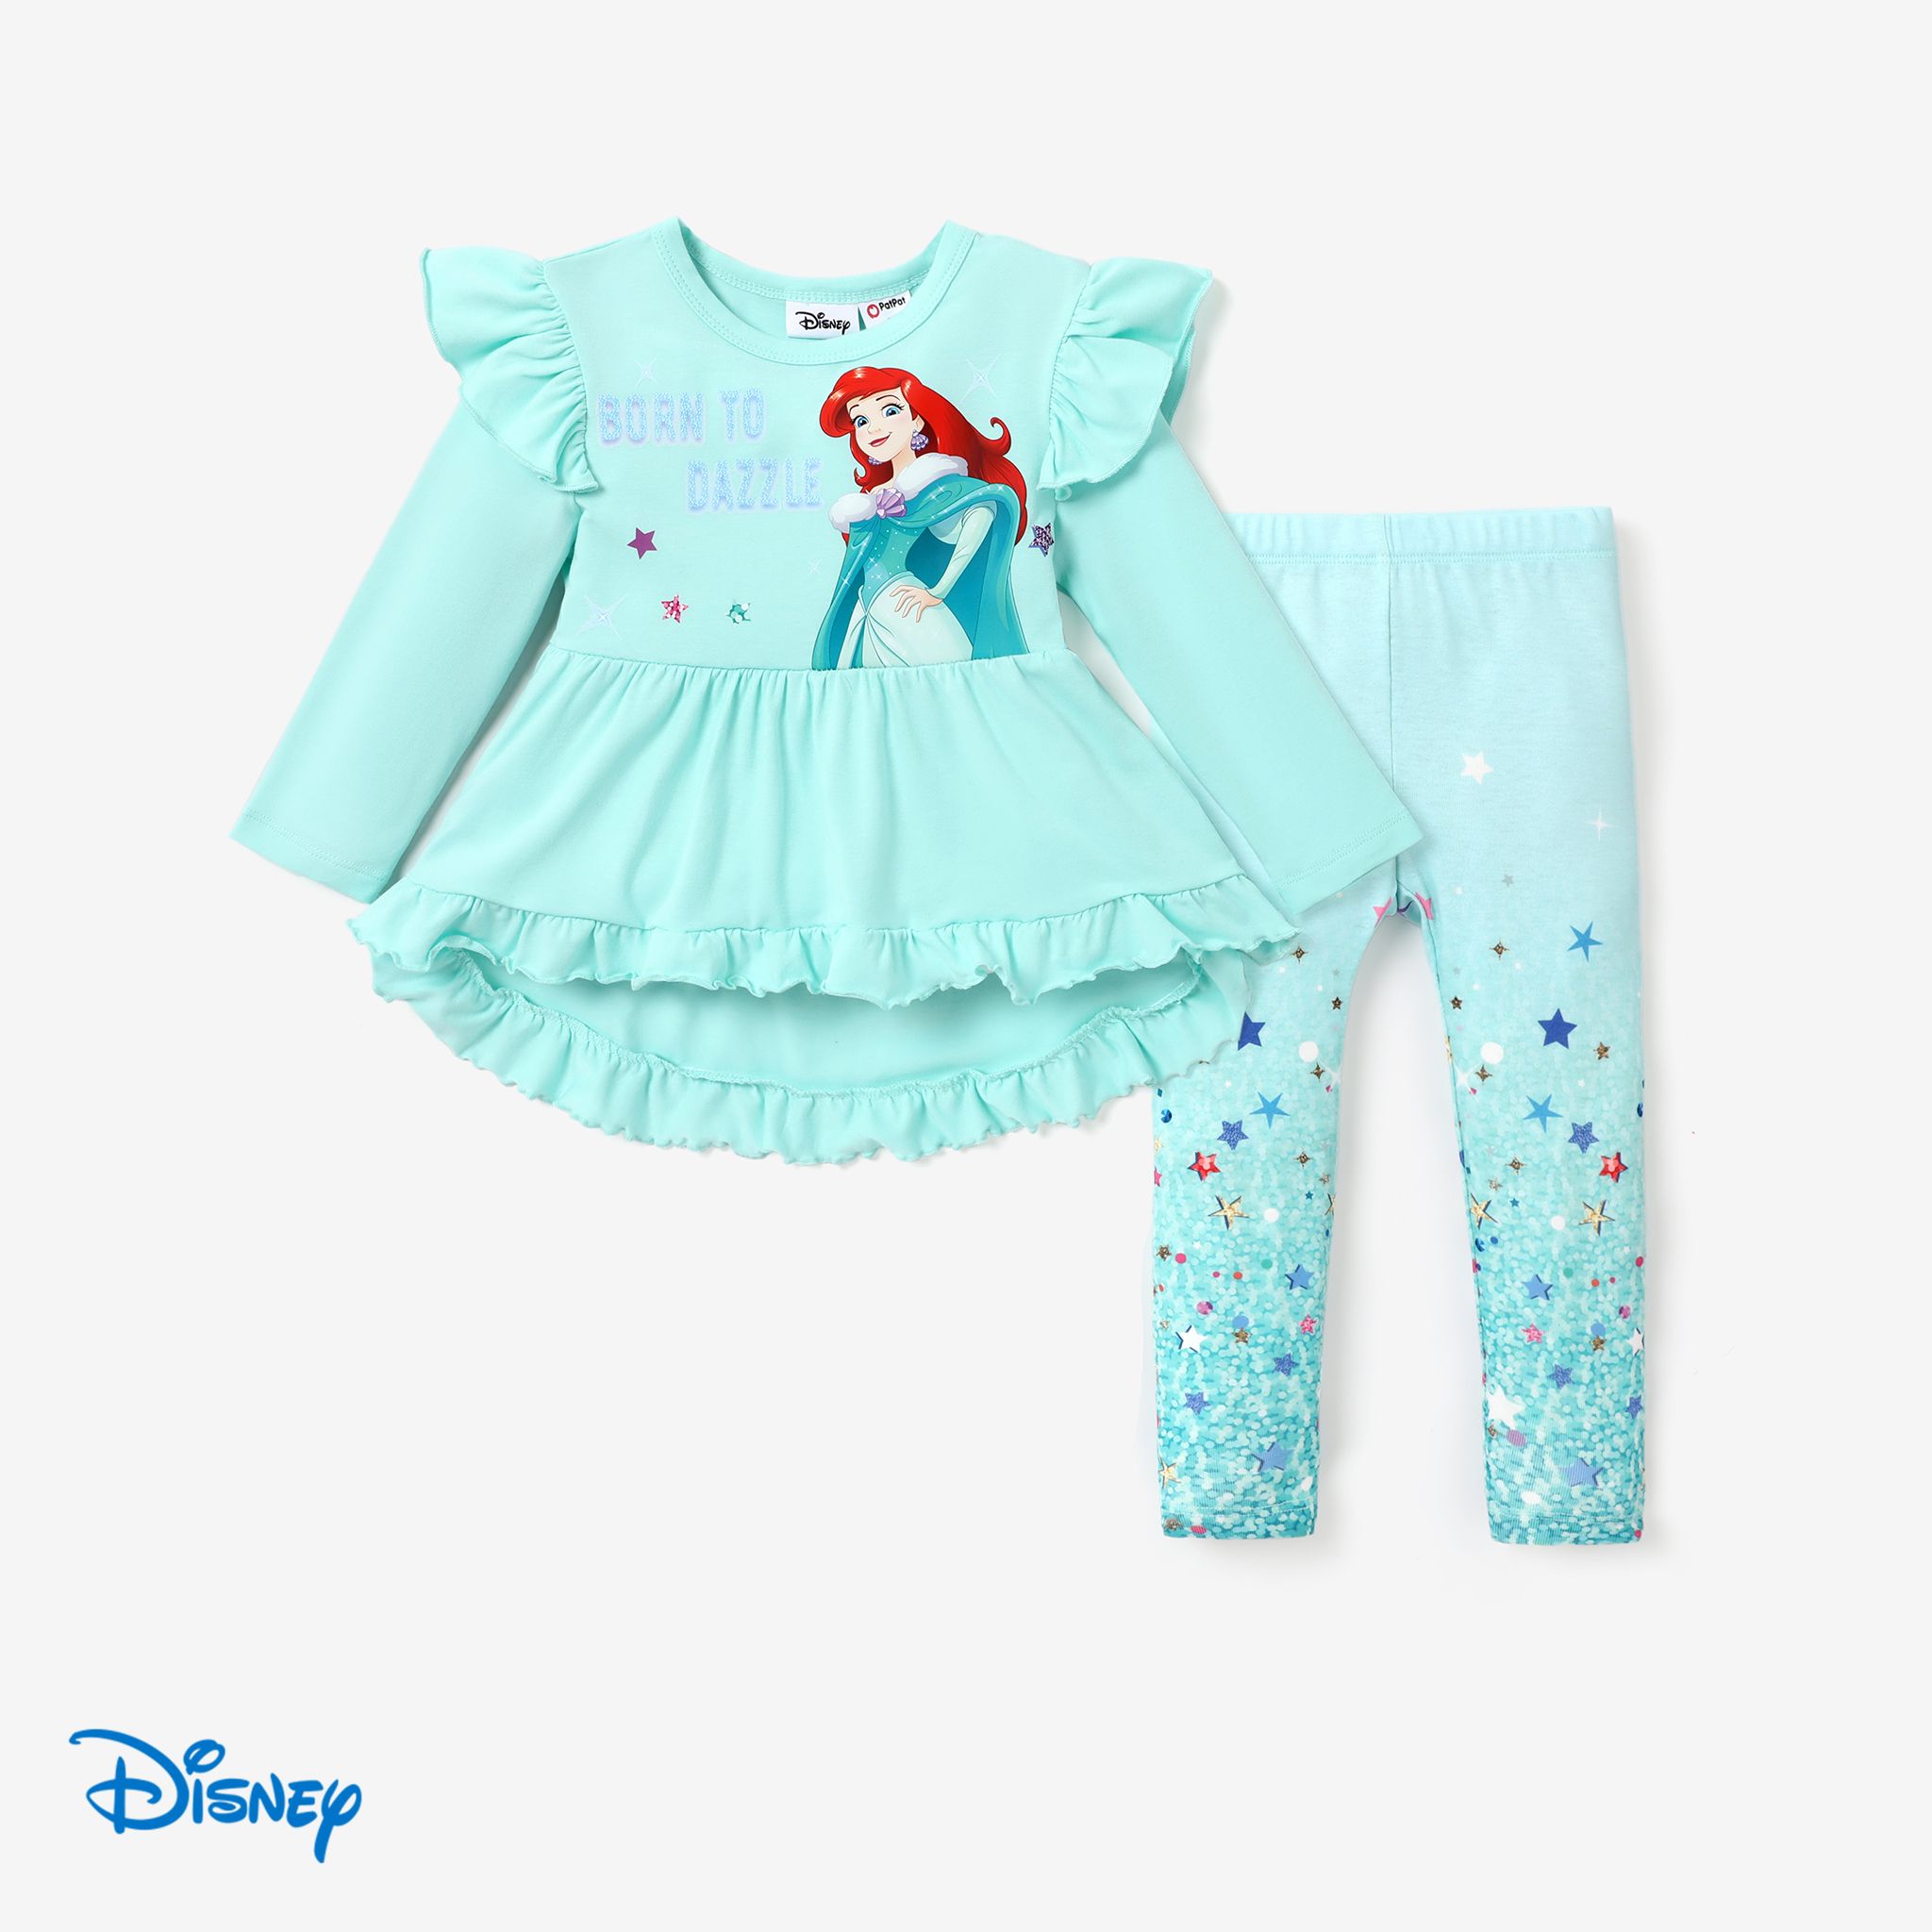 Disney Princess Toddler Girl 2pcs Ruffled Long-sleeve Top And Sequins Pants Set